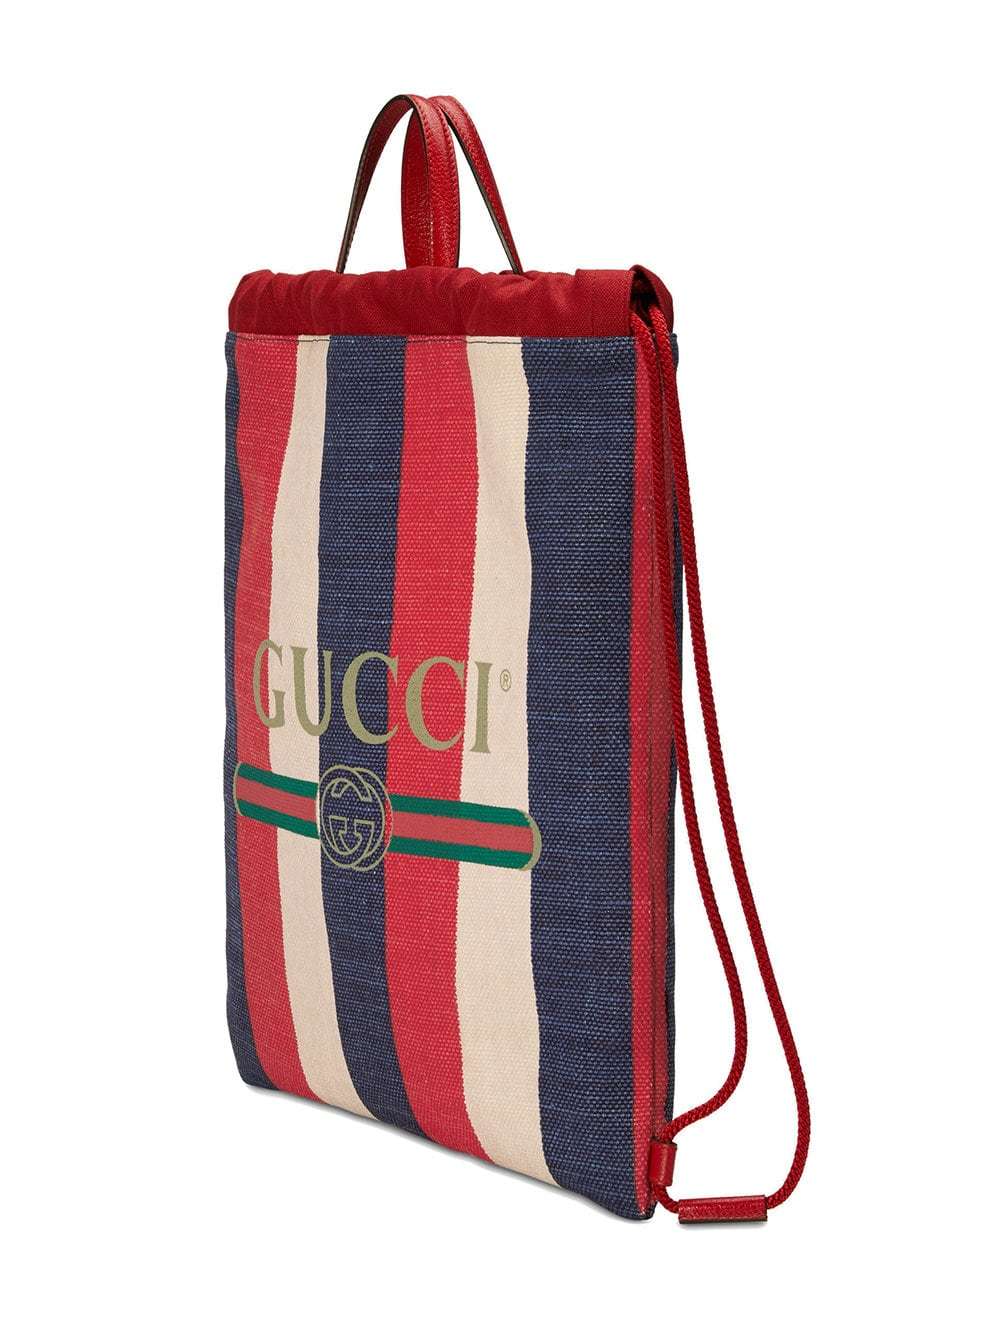 Gucci - Sac à dos rouge toile tigre (33 cm)